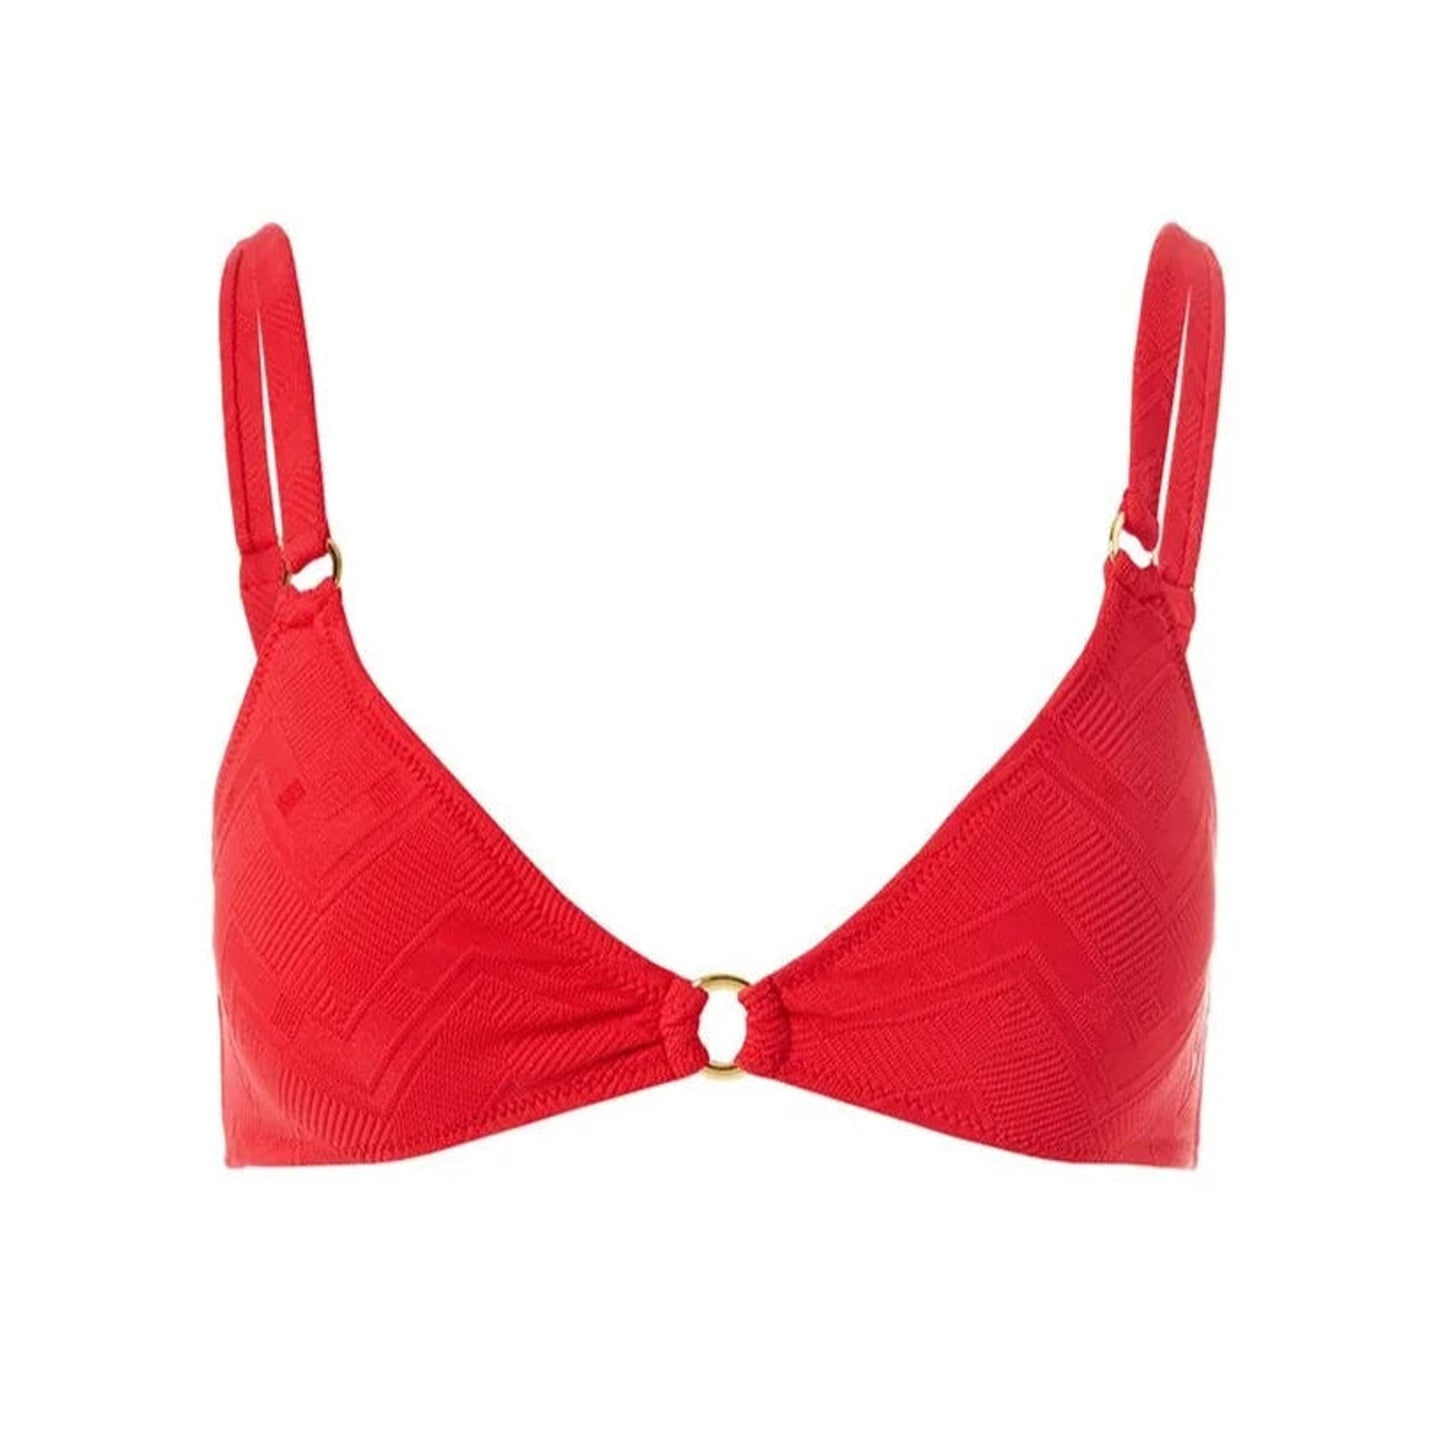 Montenegro Zigzag Red Bikini Top